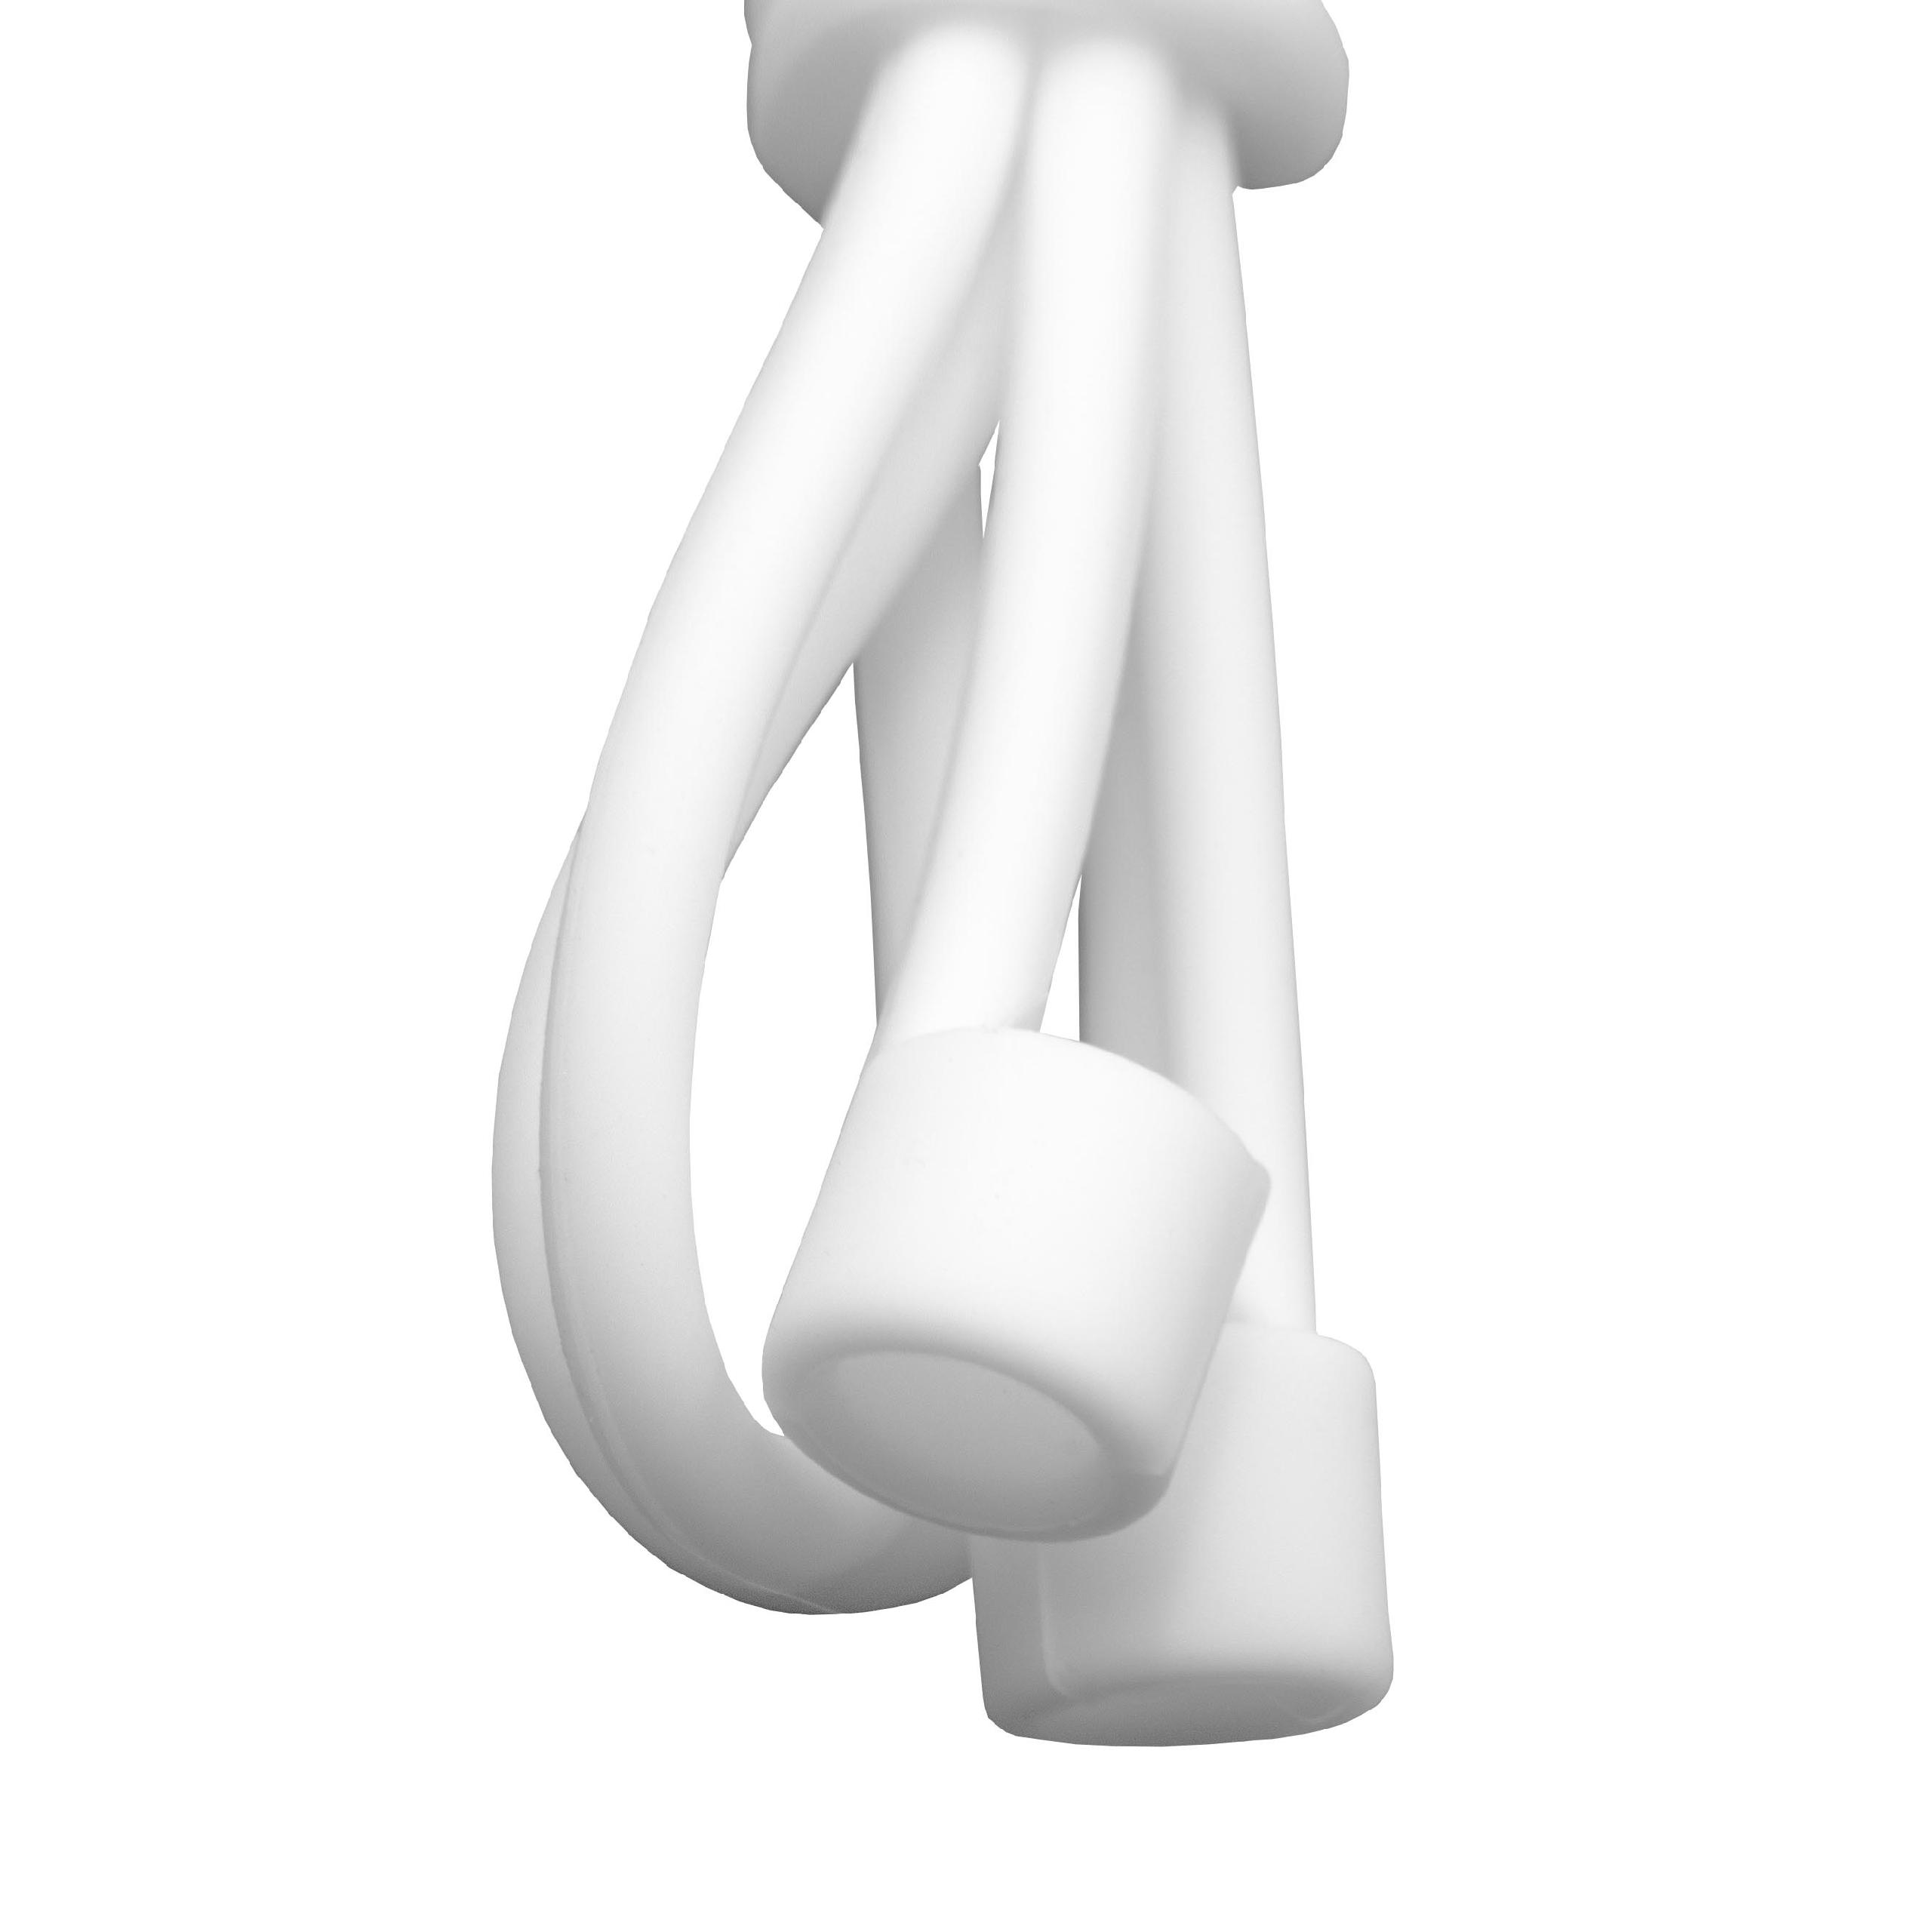 Pasek anti-lost strap na słuchawki bezprzewodowe Apple AirPods - 55 cm, biały